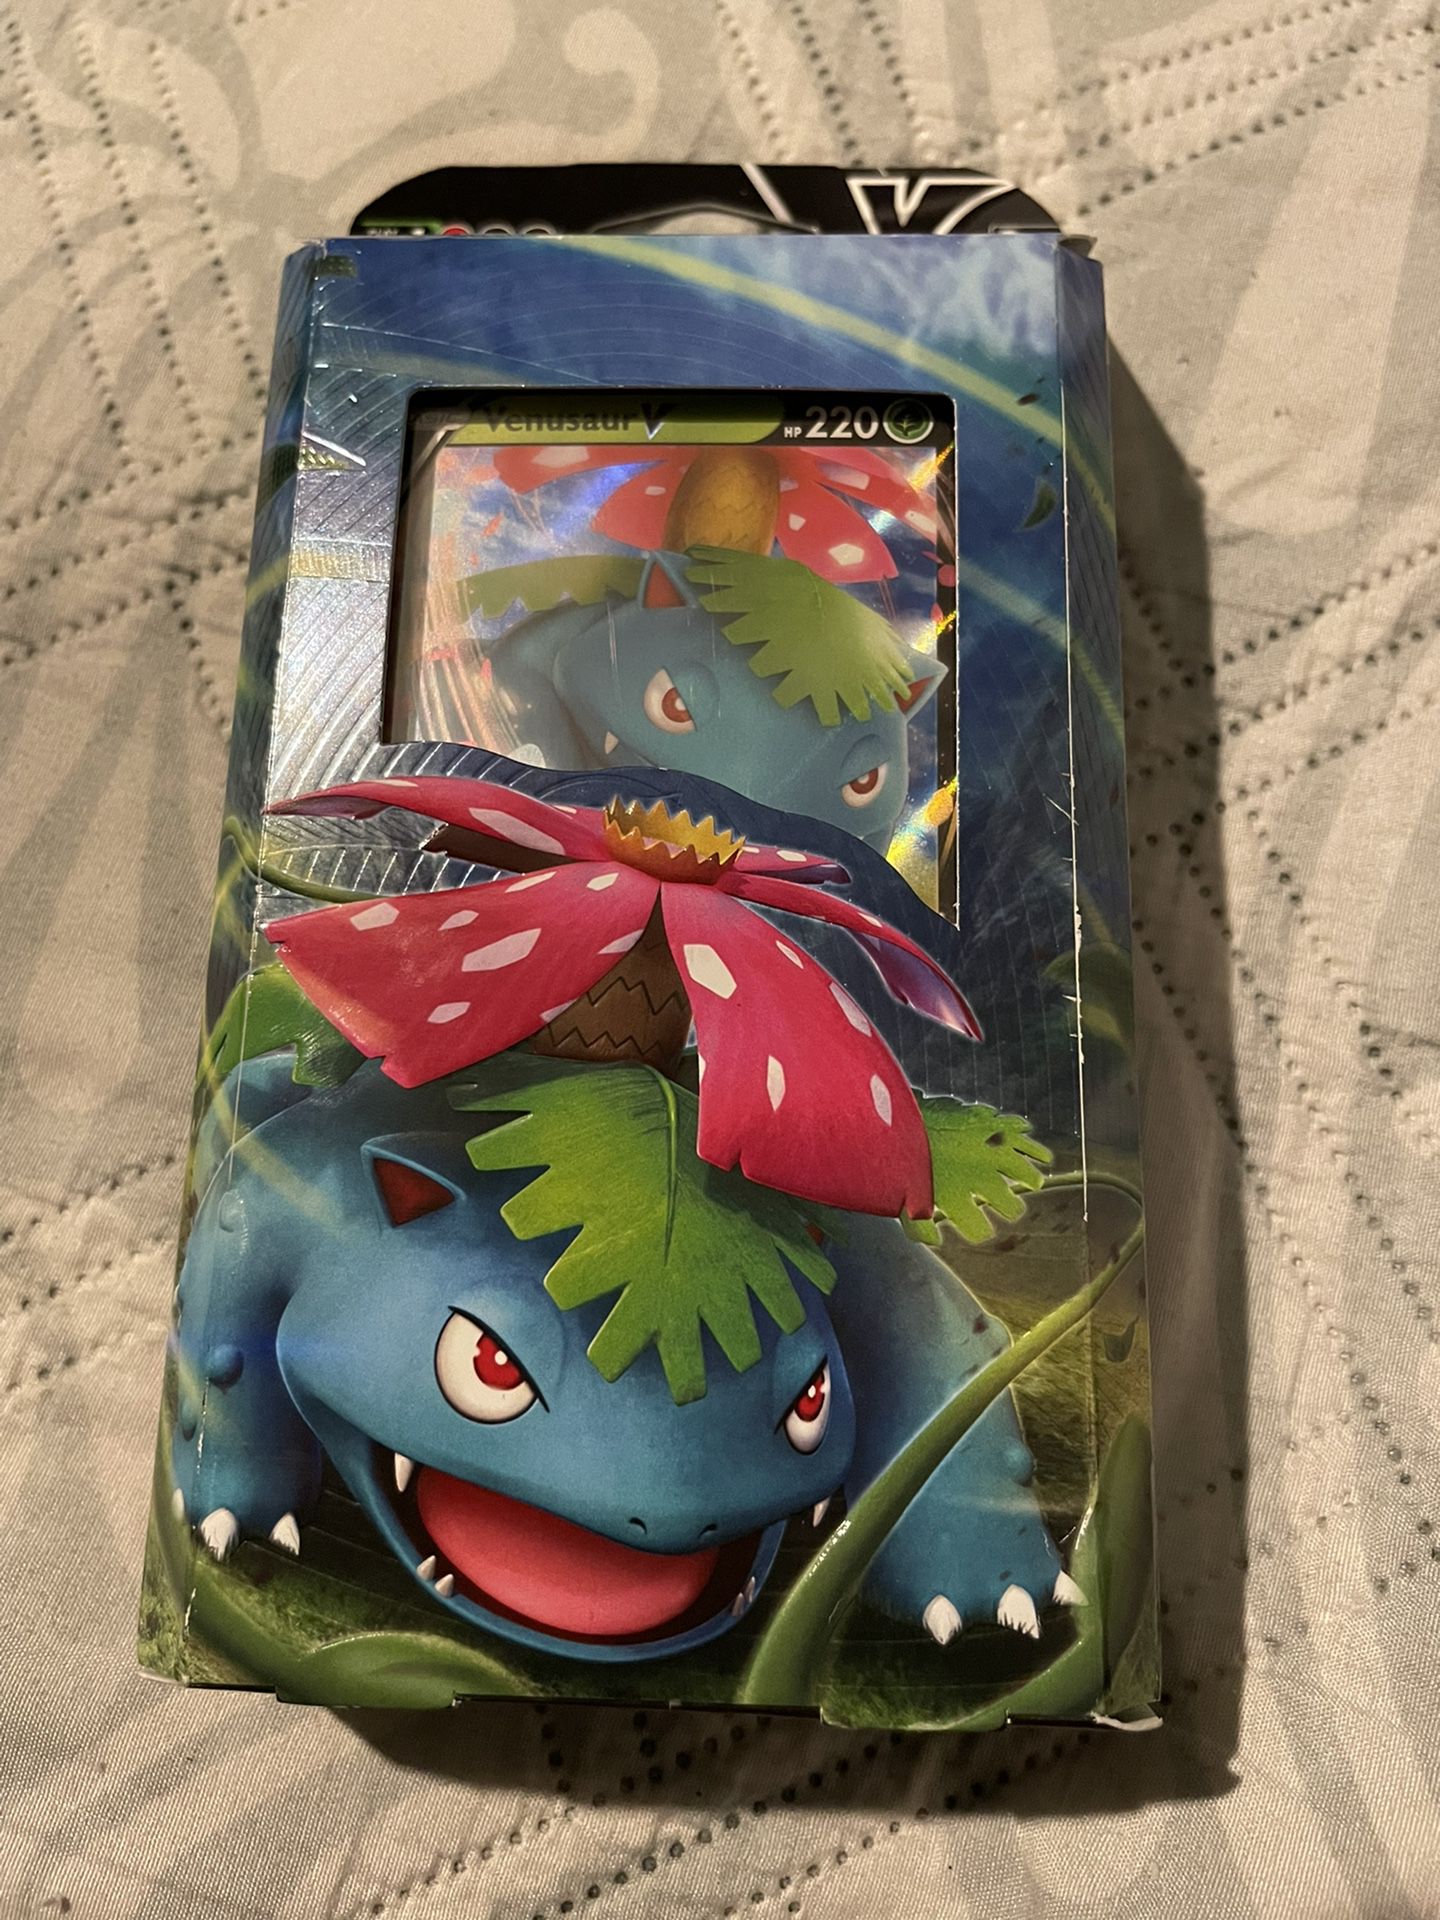 Pokémon VenusaurV Pack 